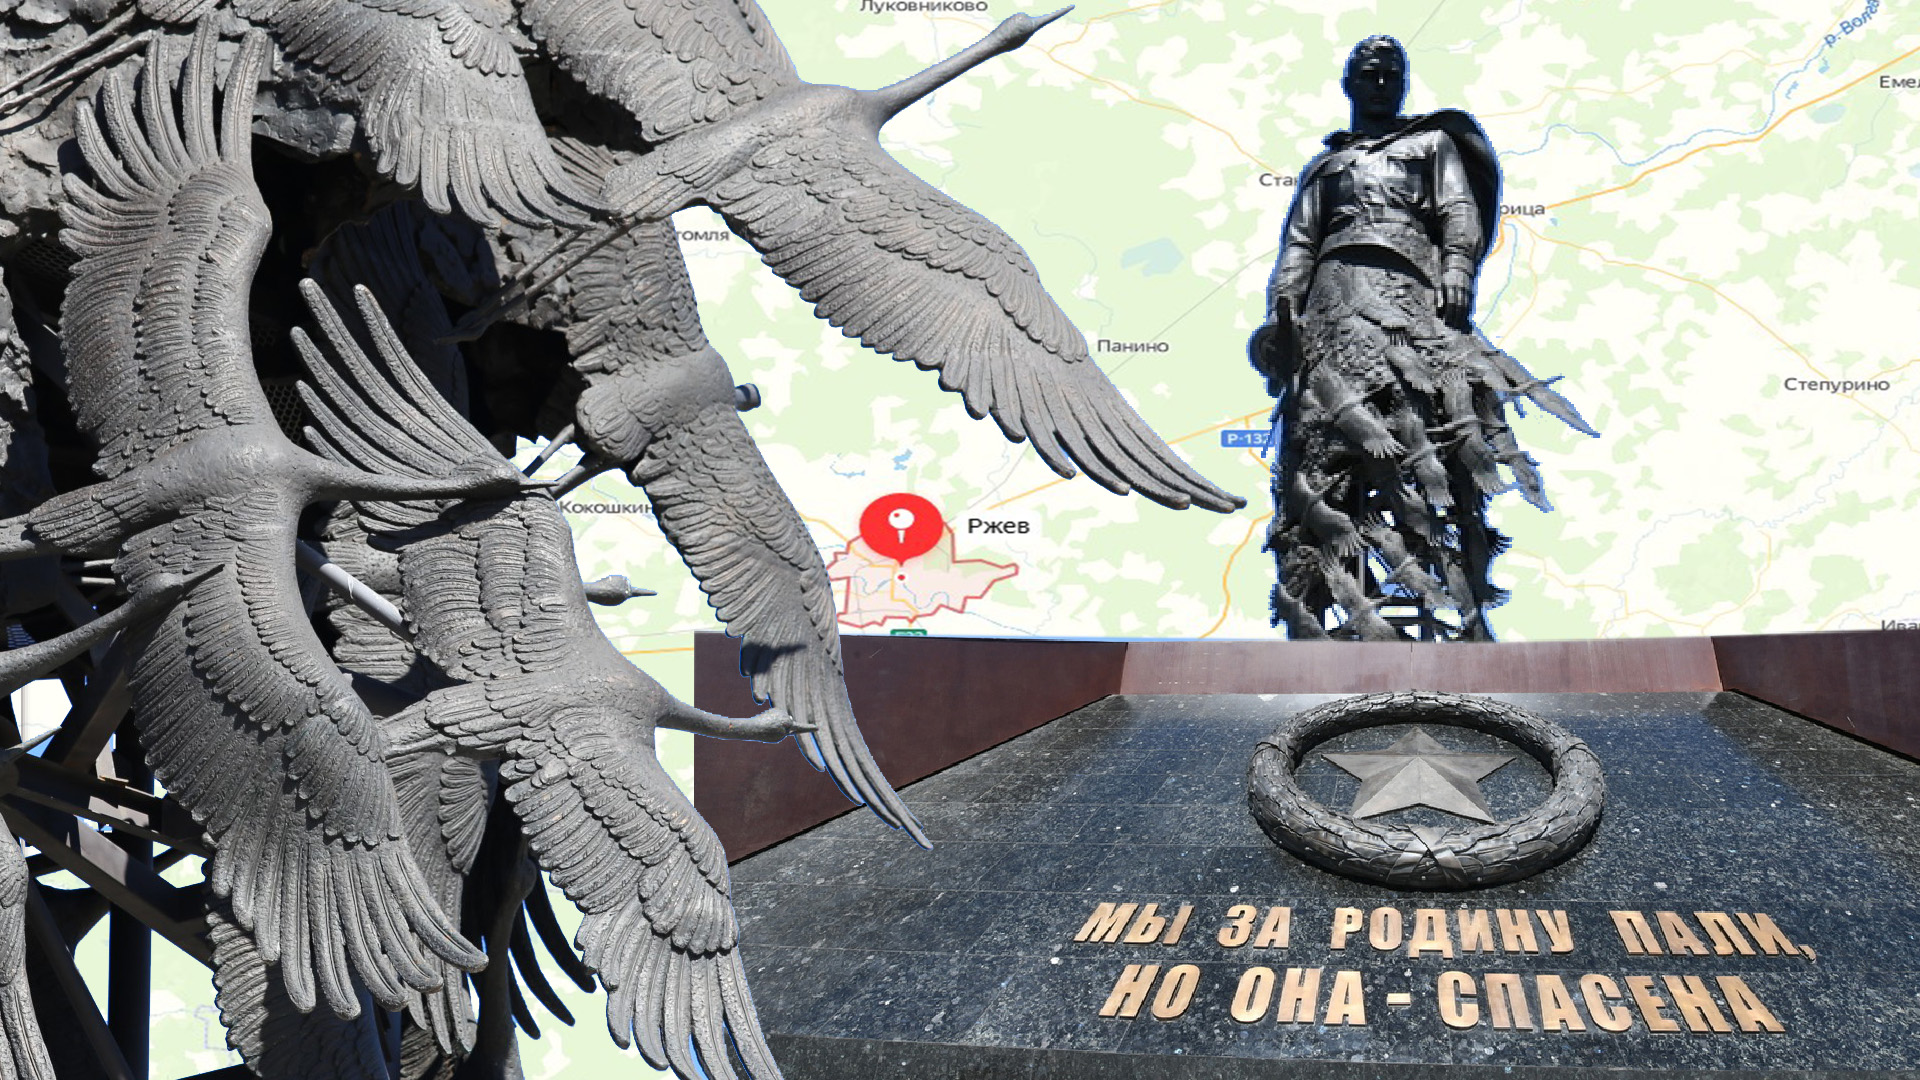 Мемориал Советскому солдату в Ржеве.